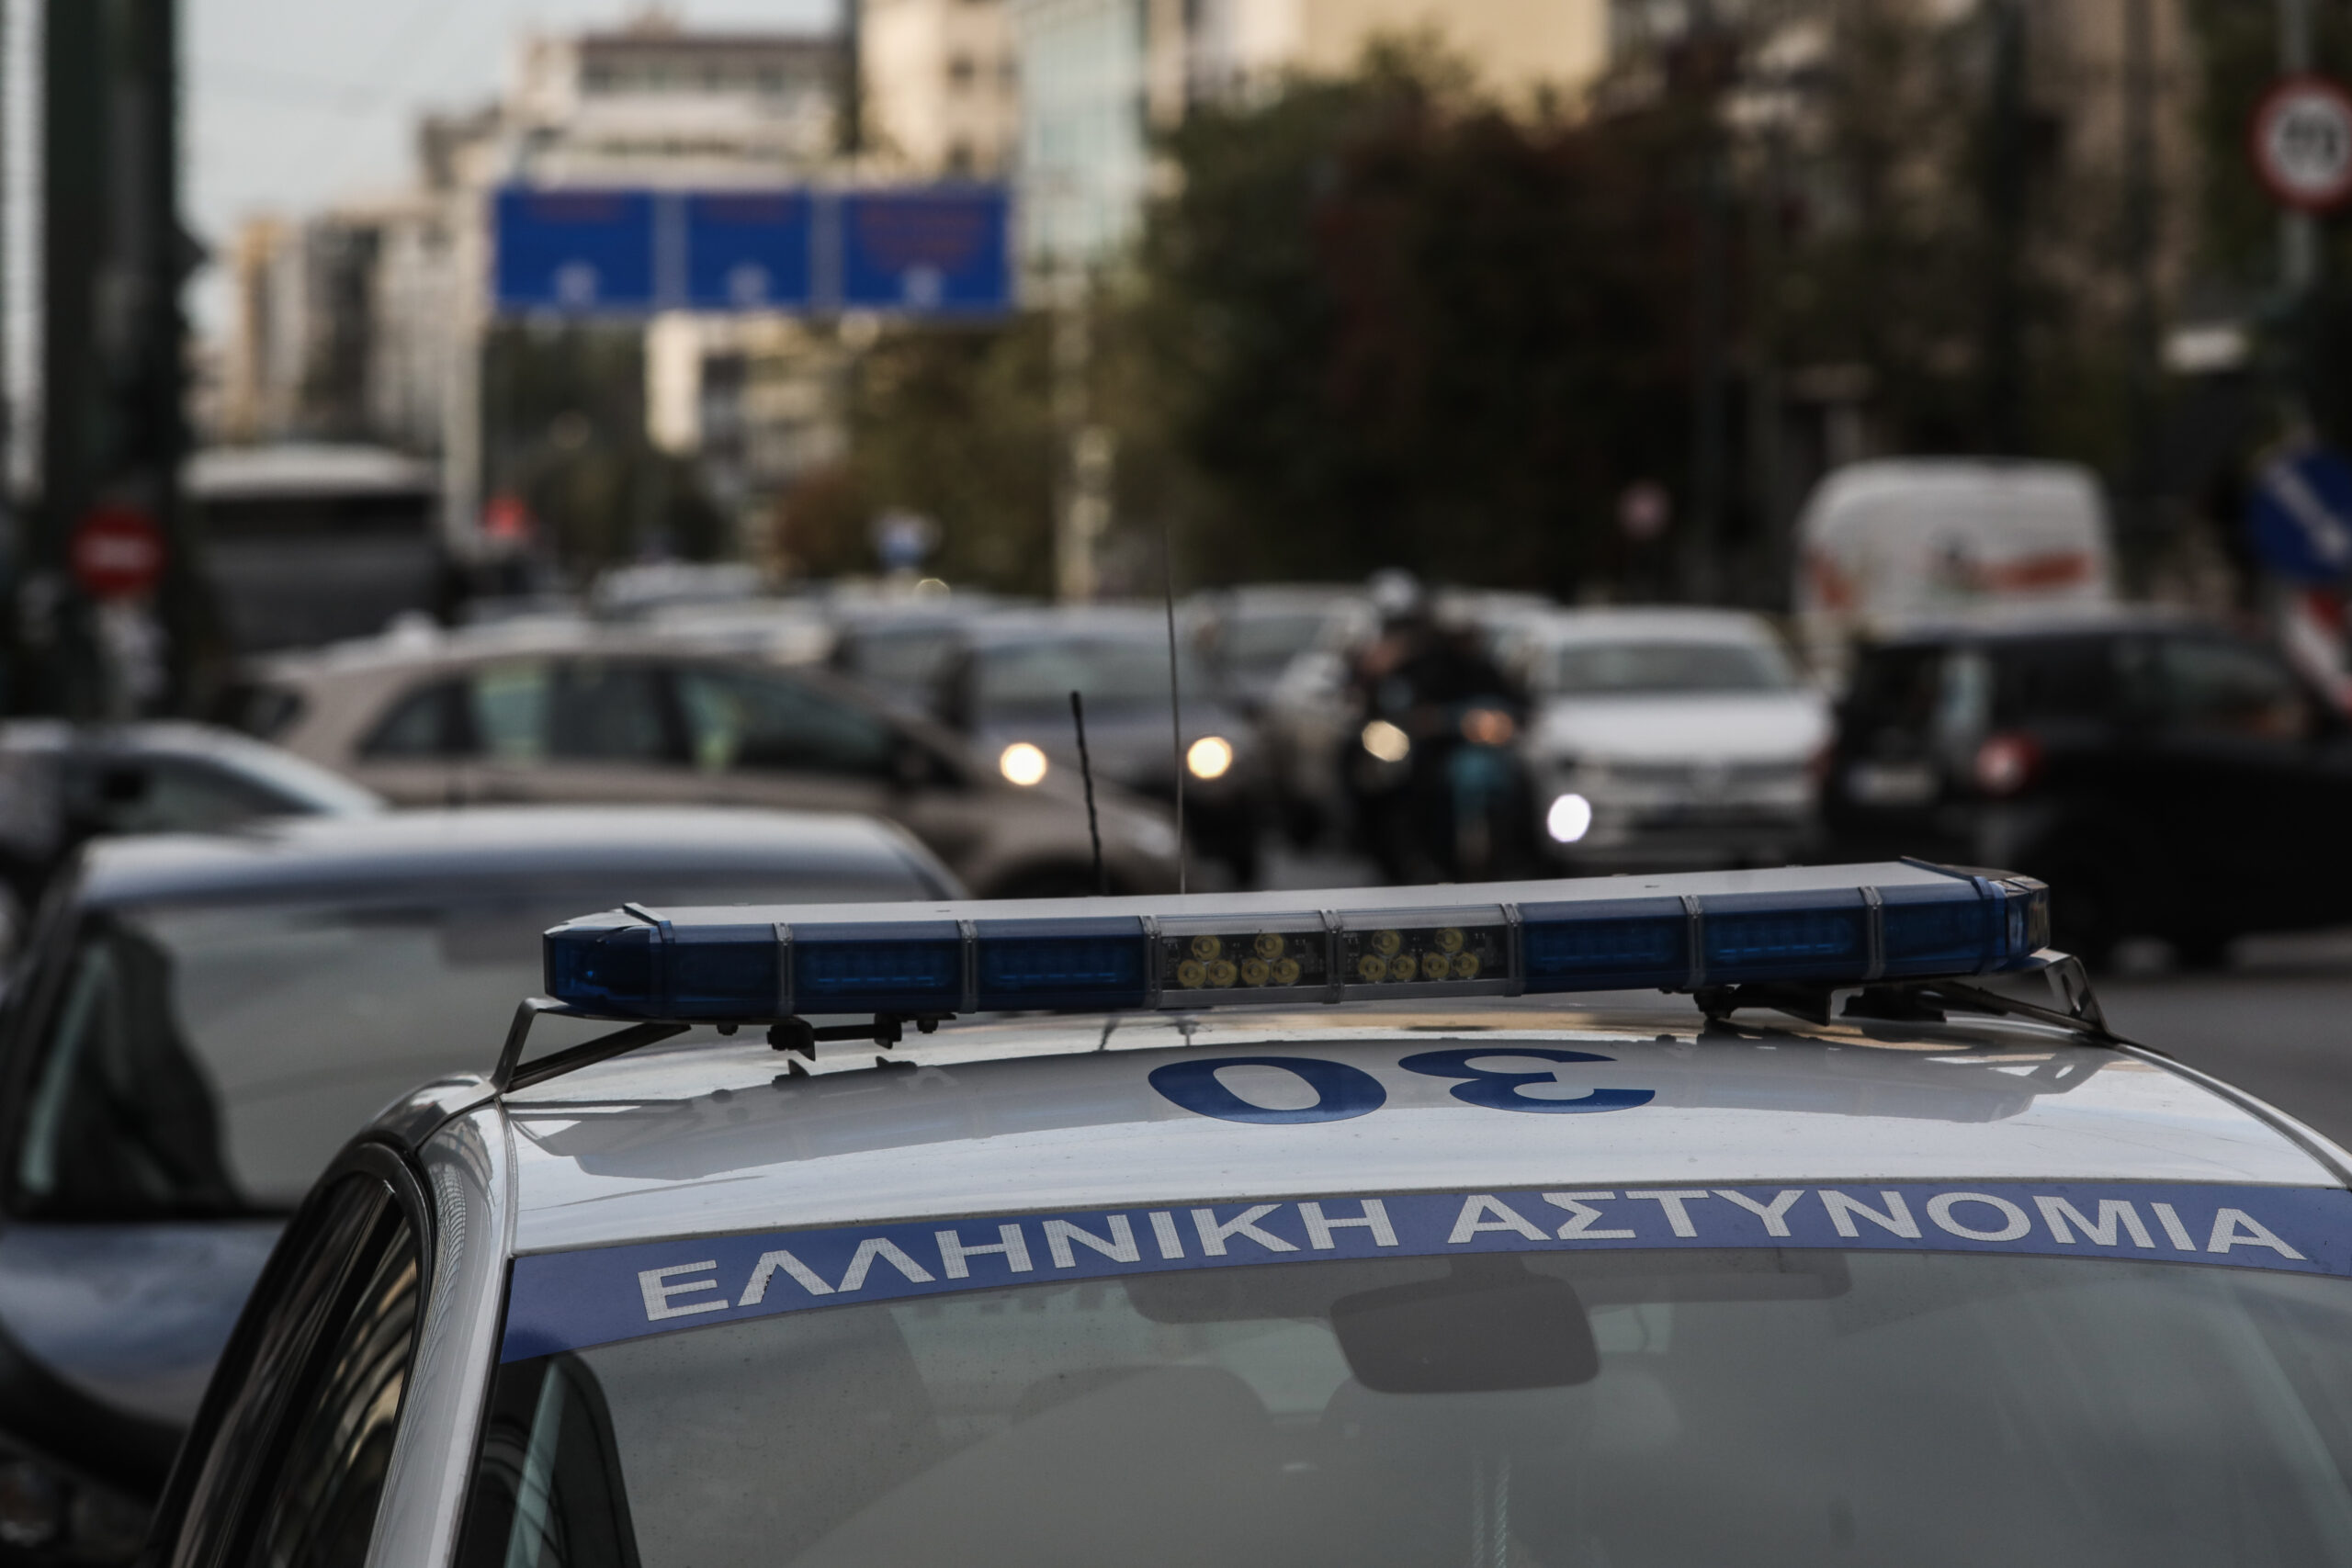 Δυσχέρεια στην κυκλοφορία στην Αθηνών – Κορίνθου  λόγω ακινητοποιημένου οχήματος